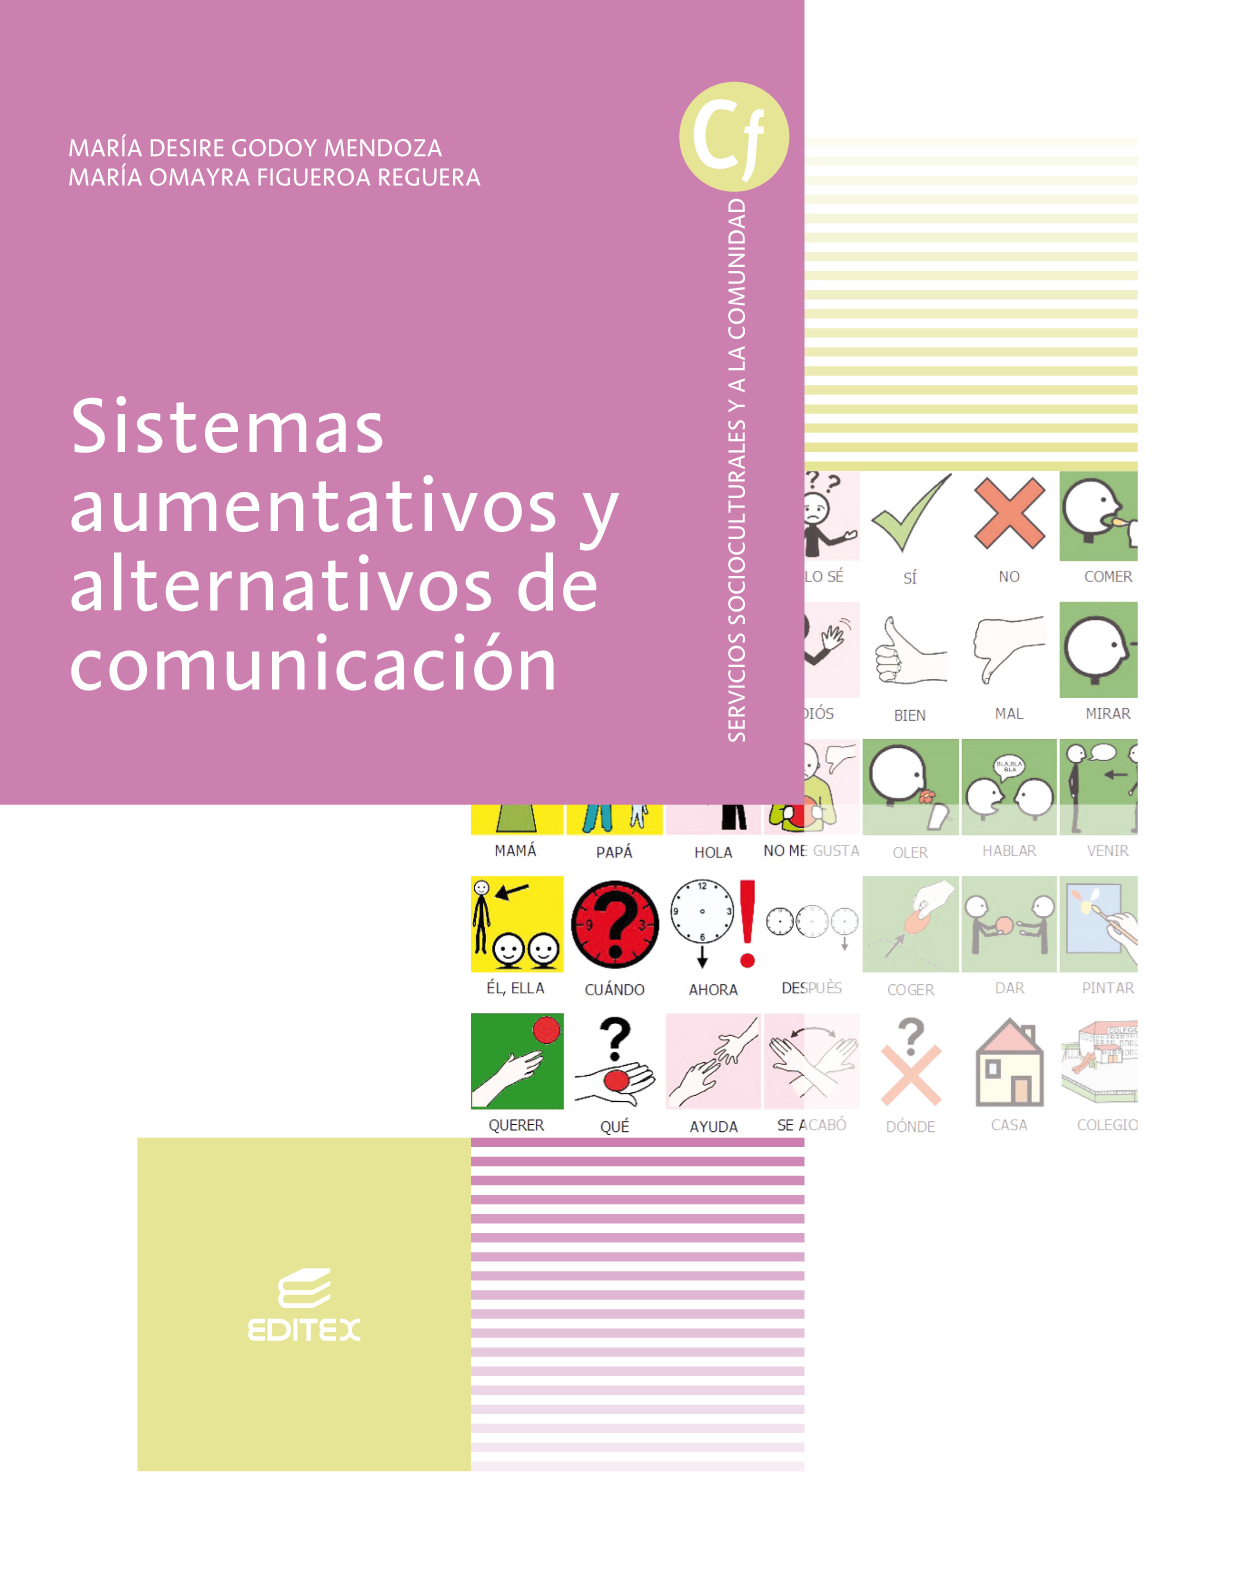 Sistemas aumentativos y alternativos de comunicación (2020)